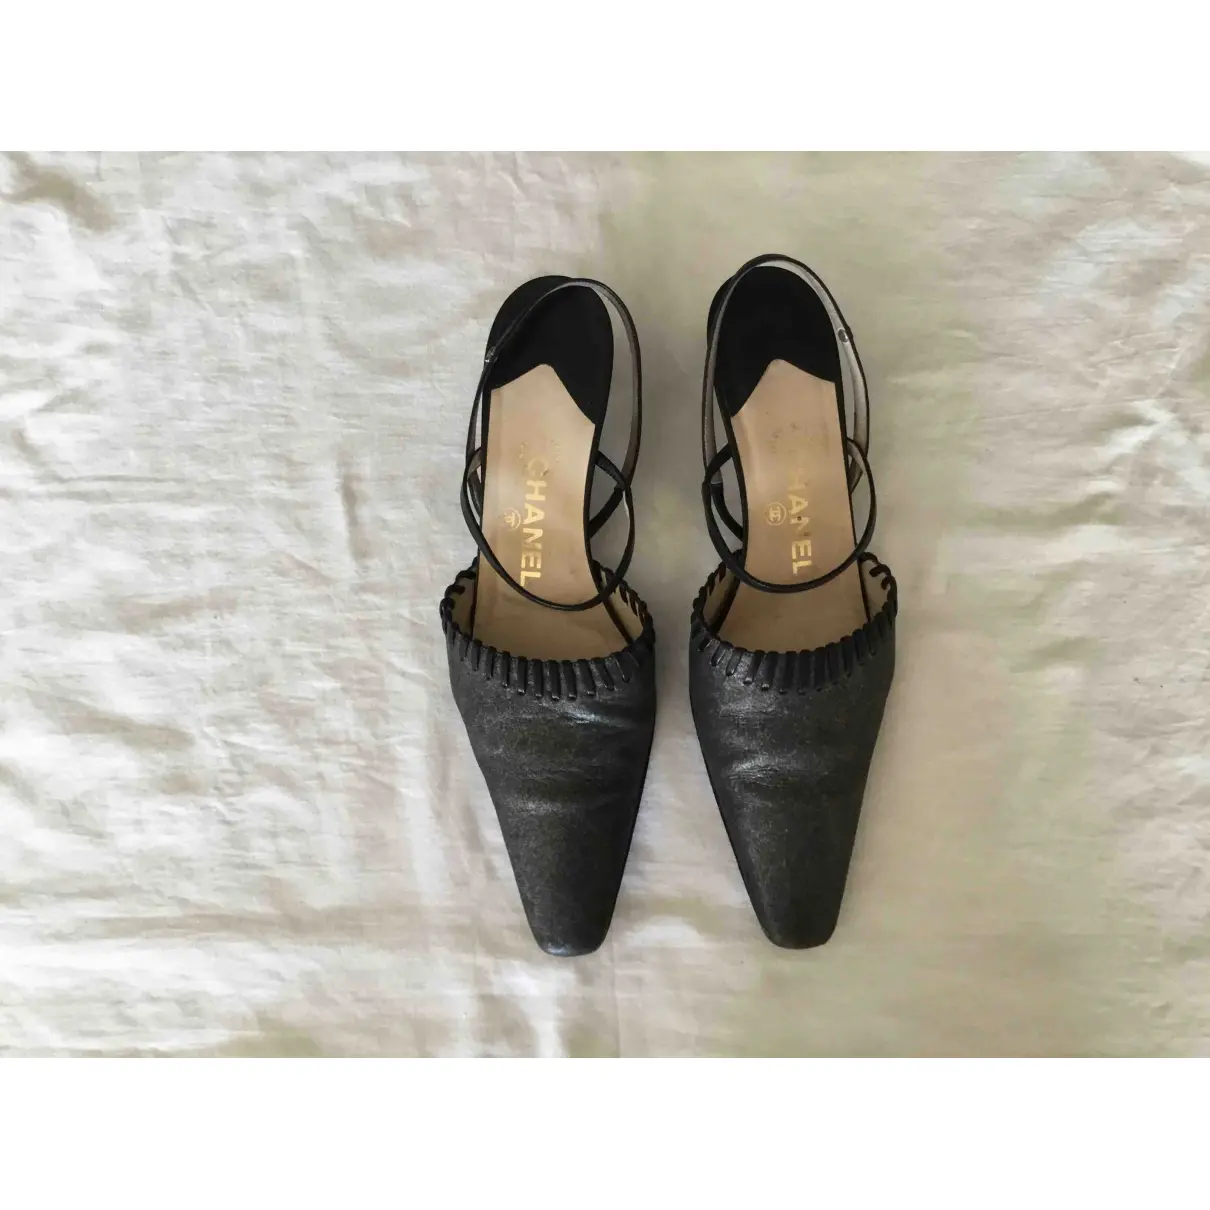 Buy Chanel Leather sandals online - Vintage